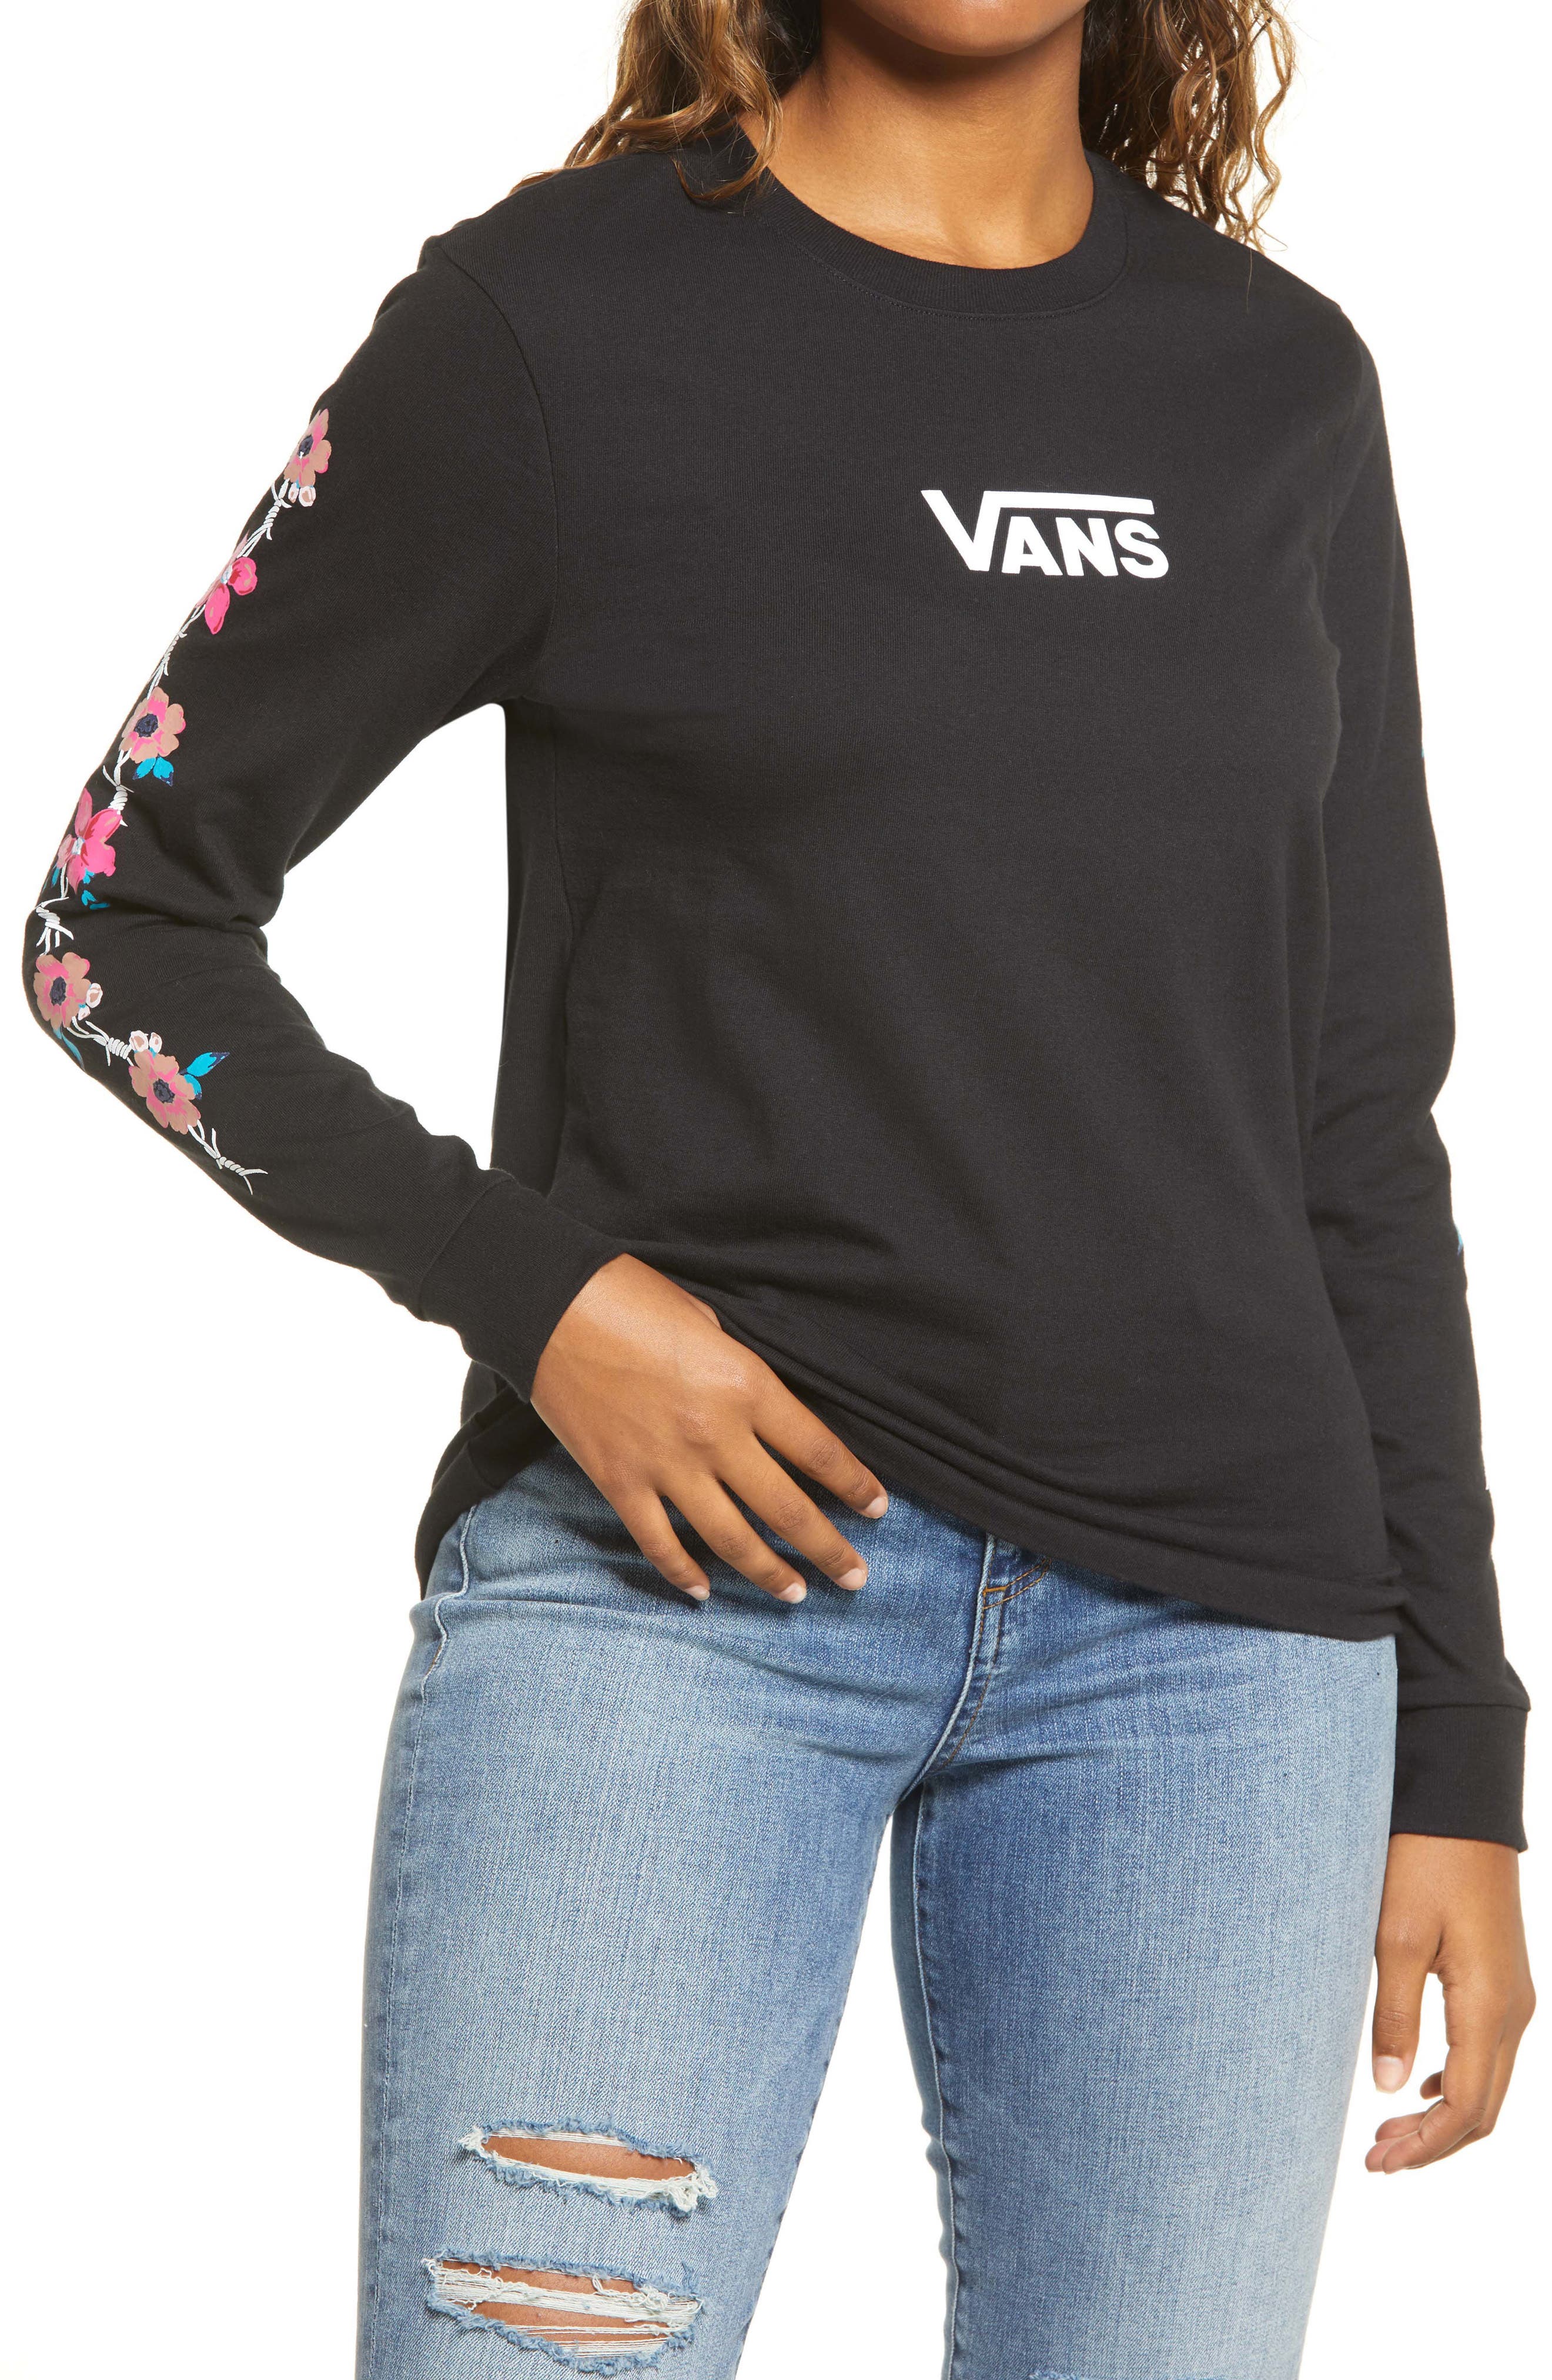 vans t shirt women's sale